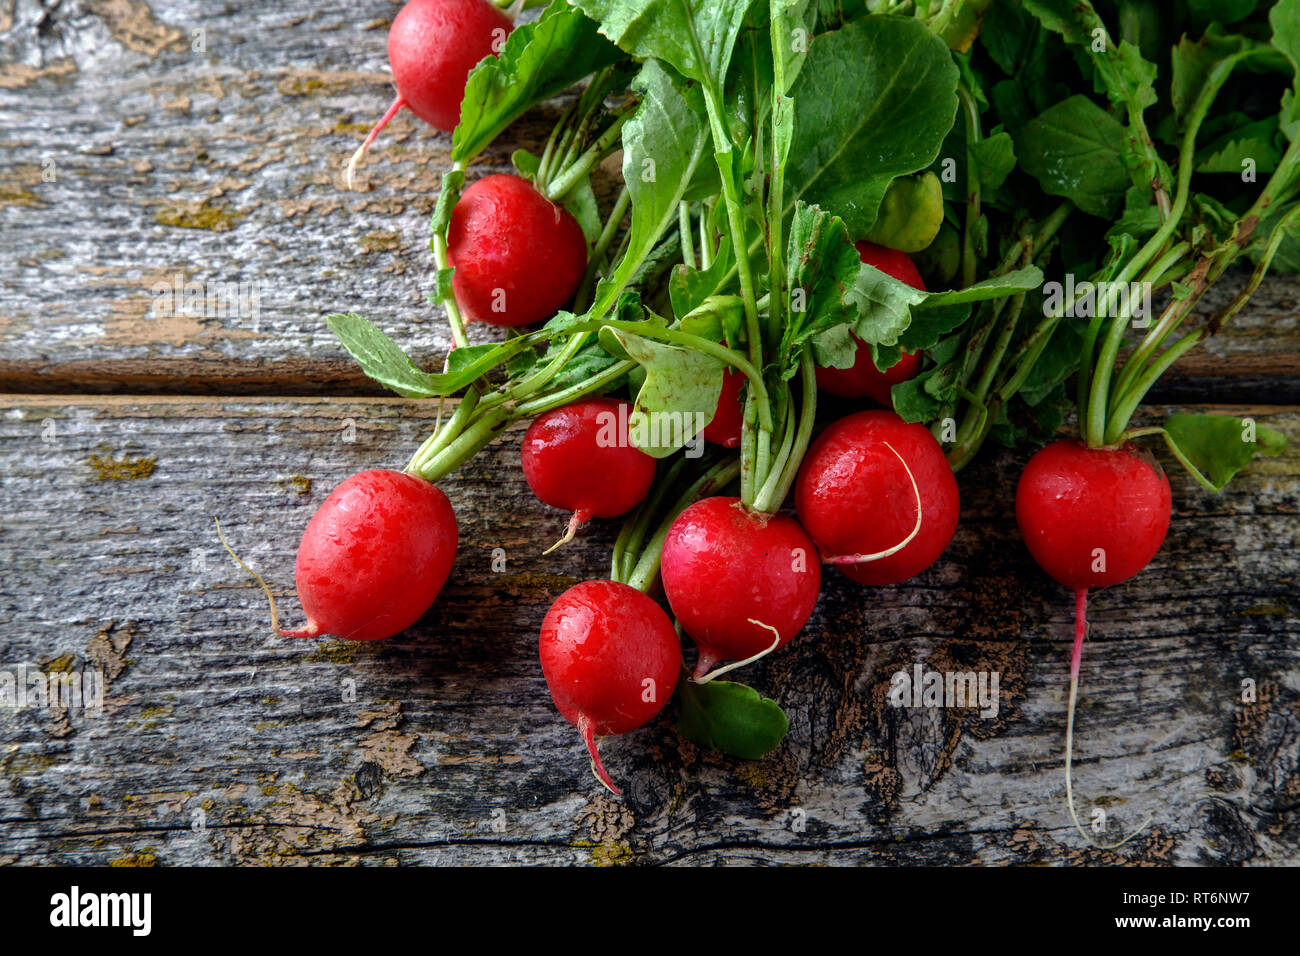 Ripe radish on wooden table Stock Photo